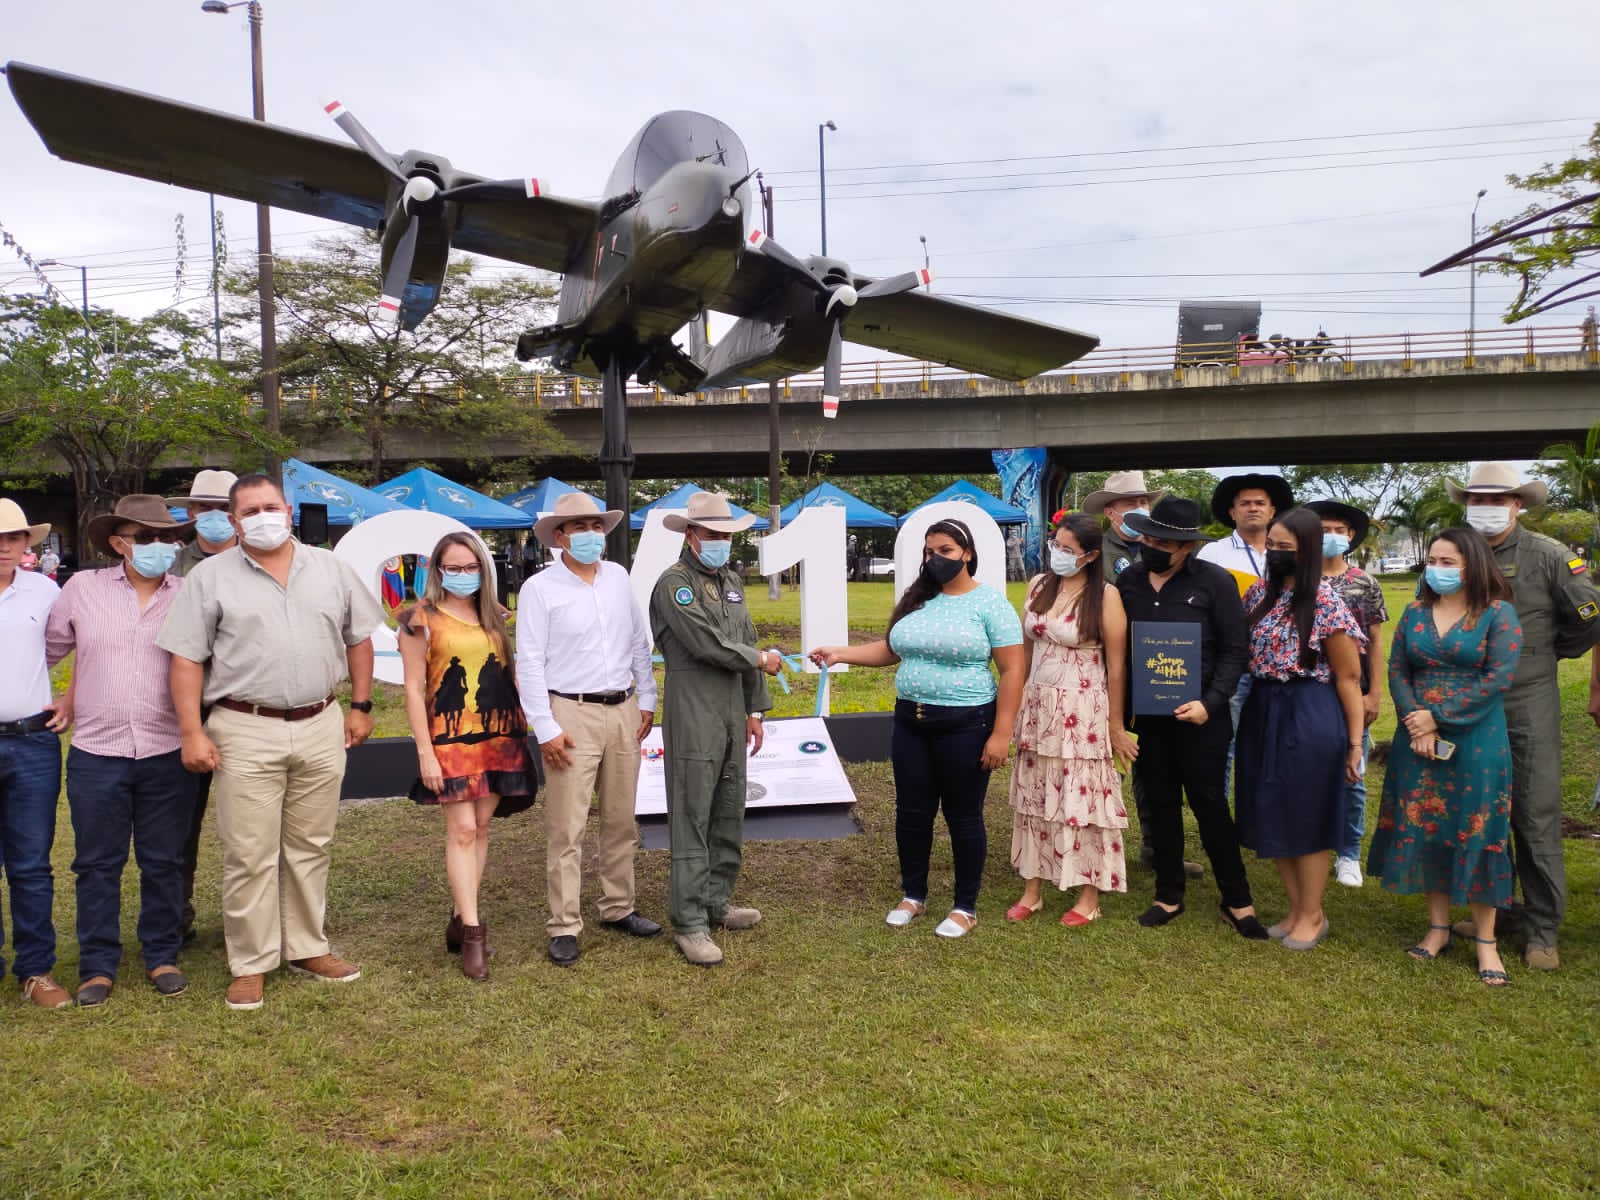 En emotiva ceremonia fue reinagurado en Villavicencio el monumento del avión por su Fuerza Aérea